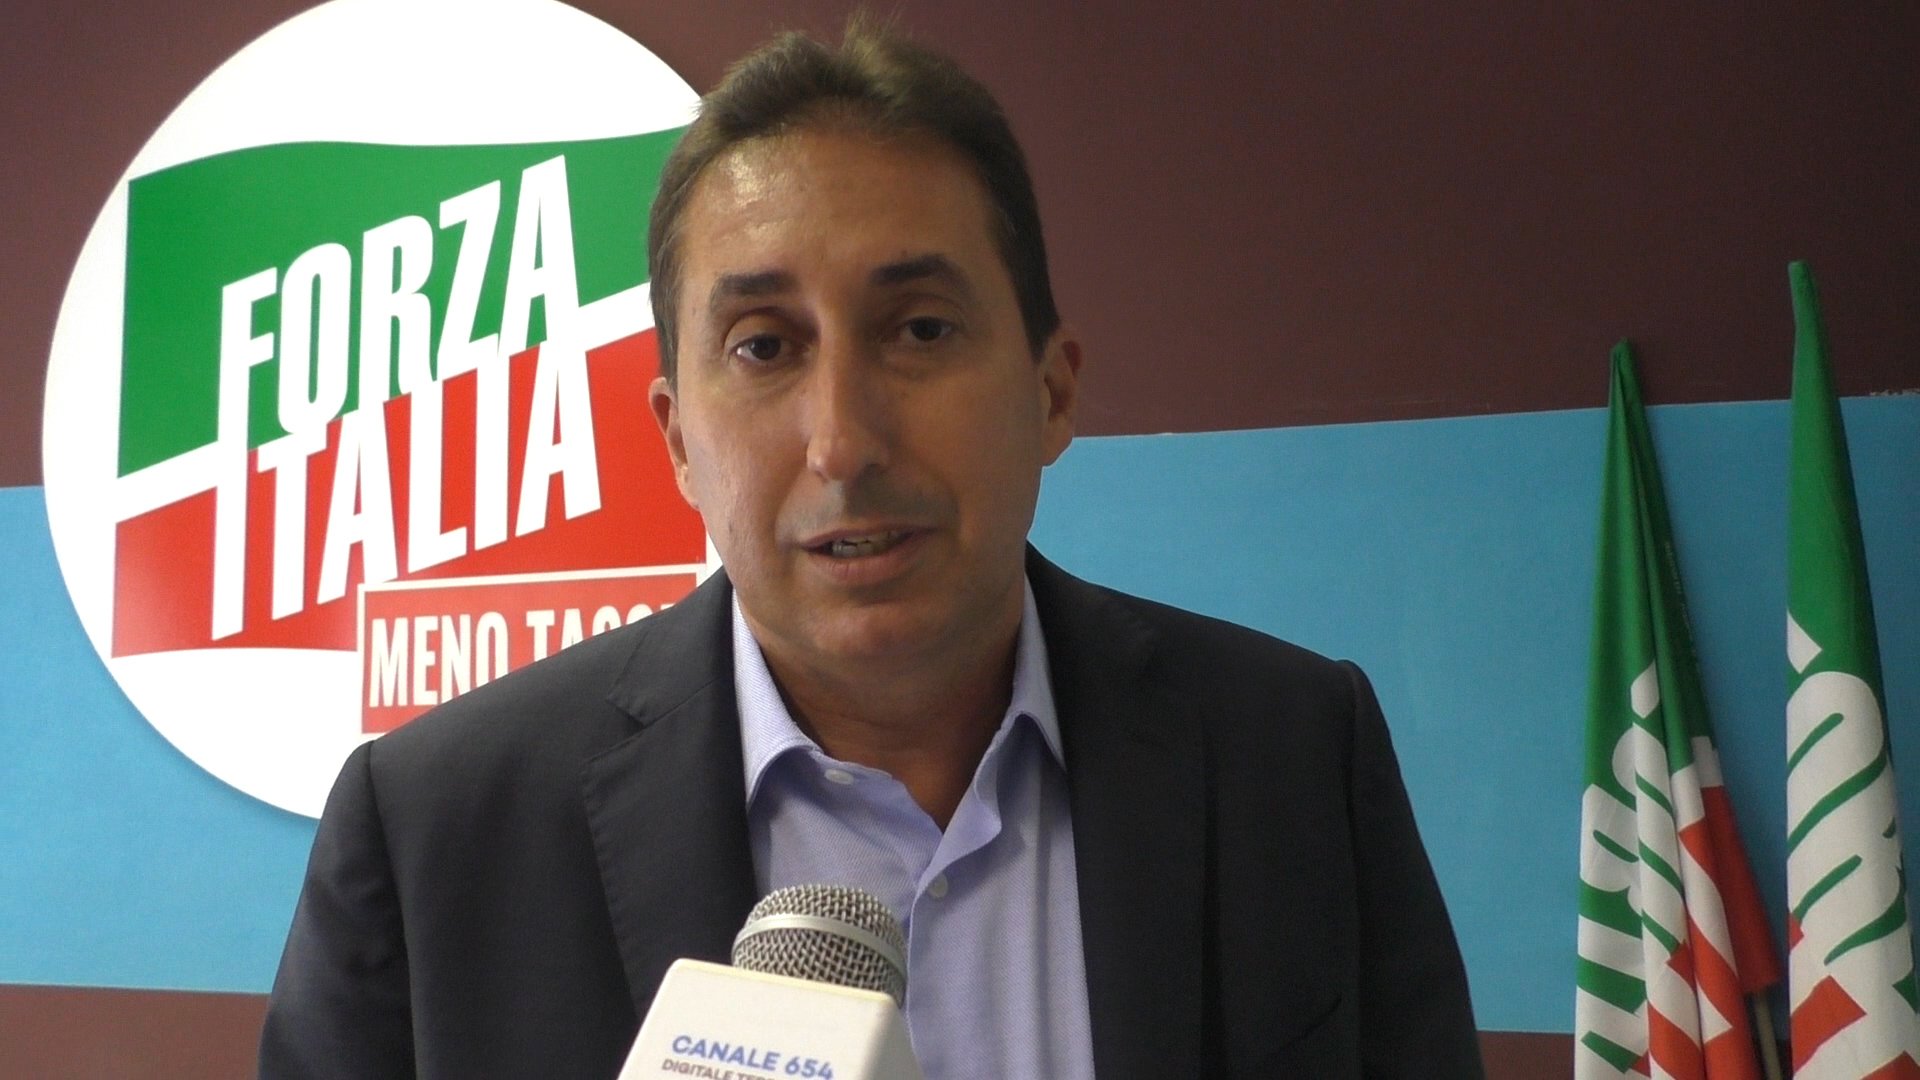 Raccolta rifiuti, Buzzi Langhi (Forza Italia) contro il porta a porta: “Costoso e già bocciato dai cittadini”